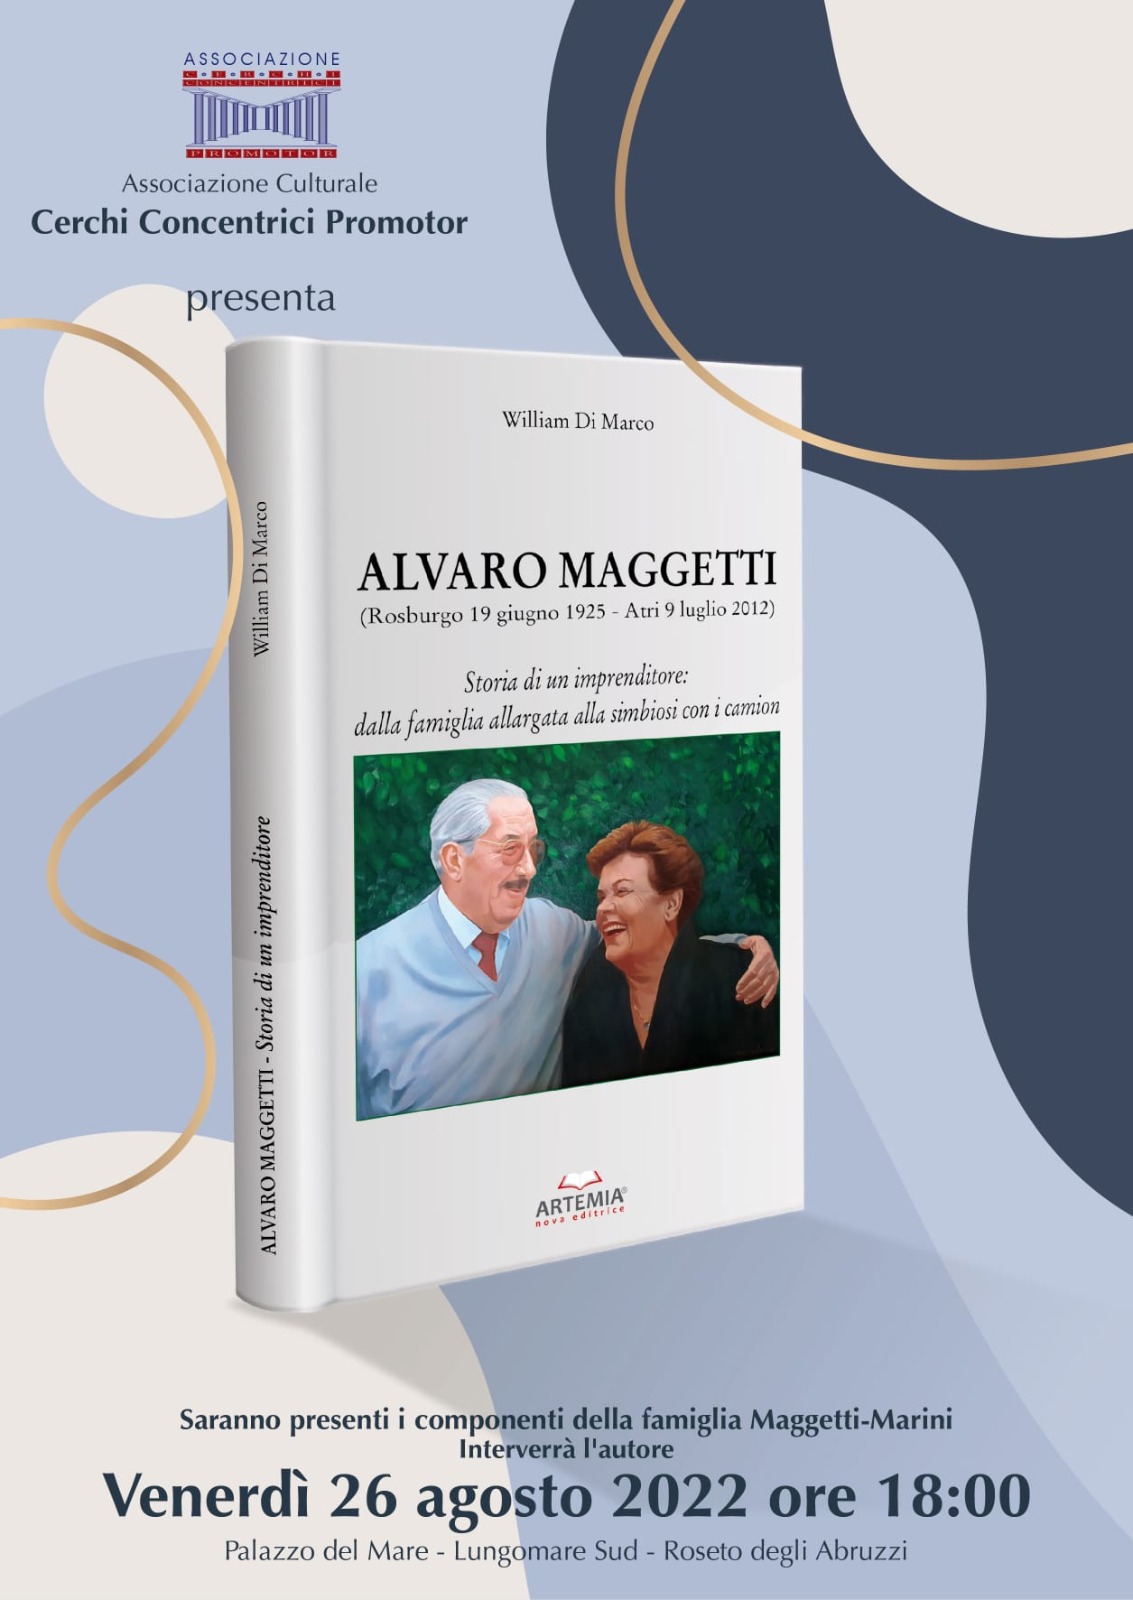 Libri&Editoria. Presentazione dell’ultimo libro di William Di Marco, ” Alvaro Maggetti. Storia di un imprenditore”